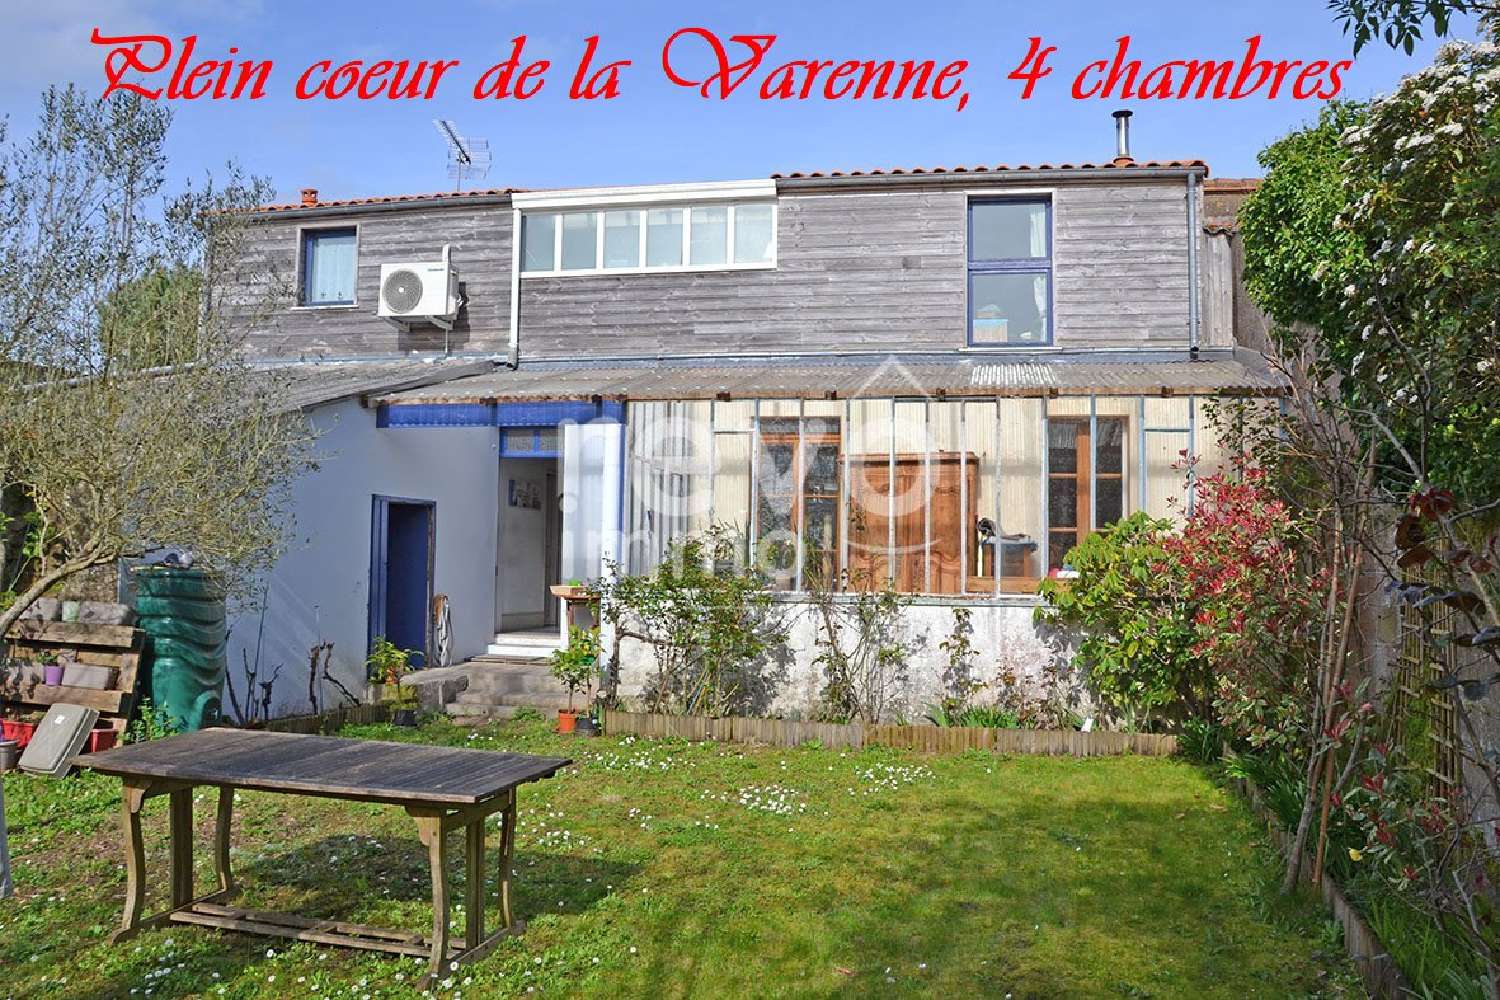  à vendre maison La Varenne Maine-et-Loire 1